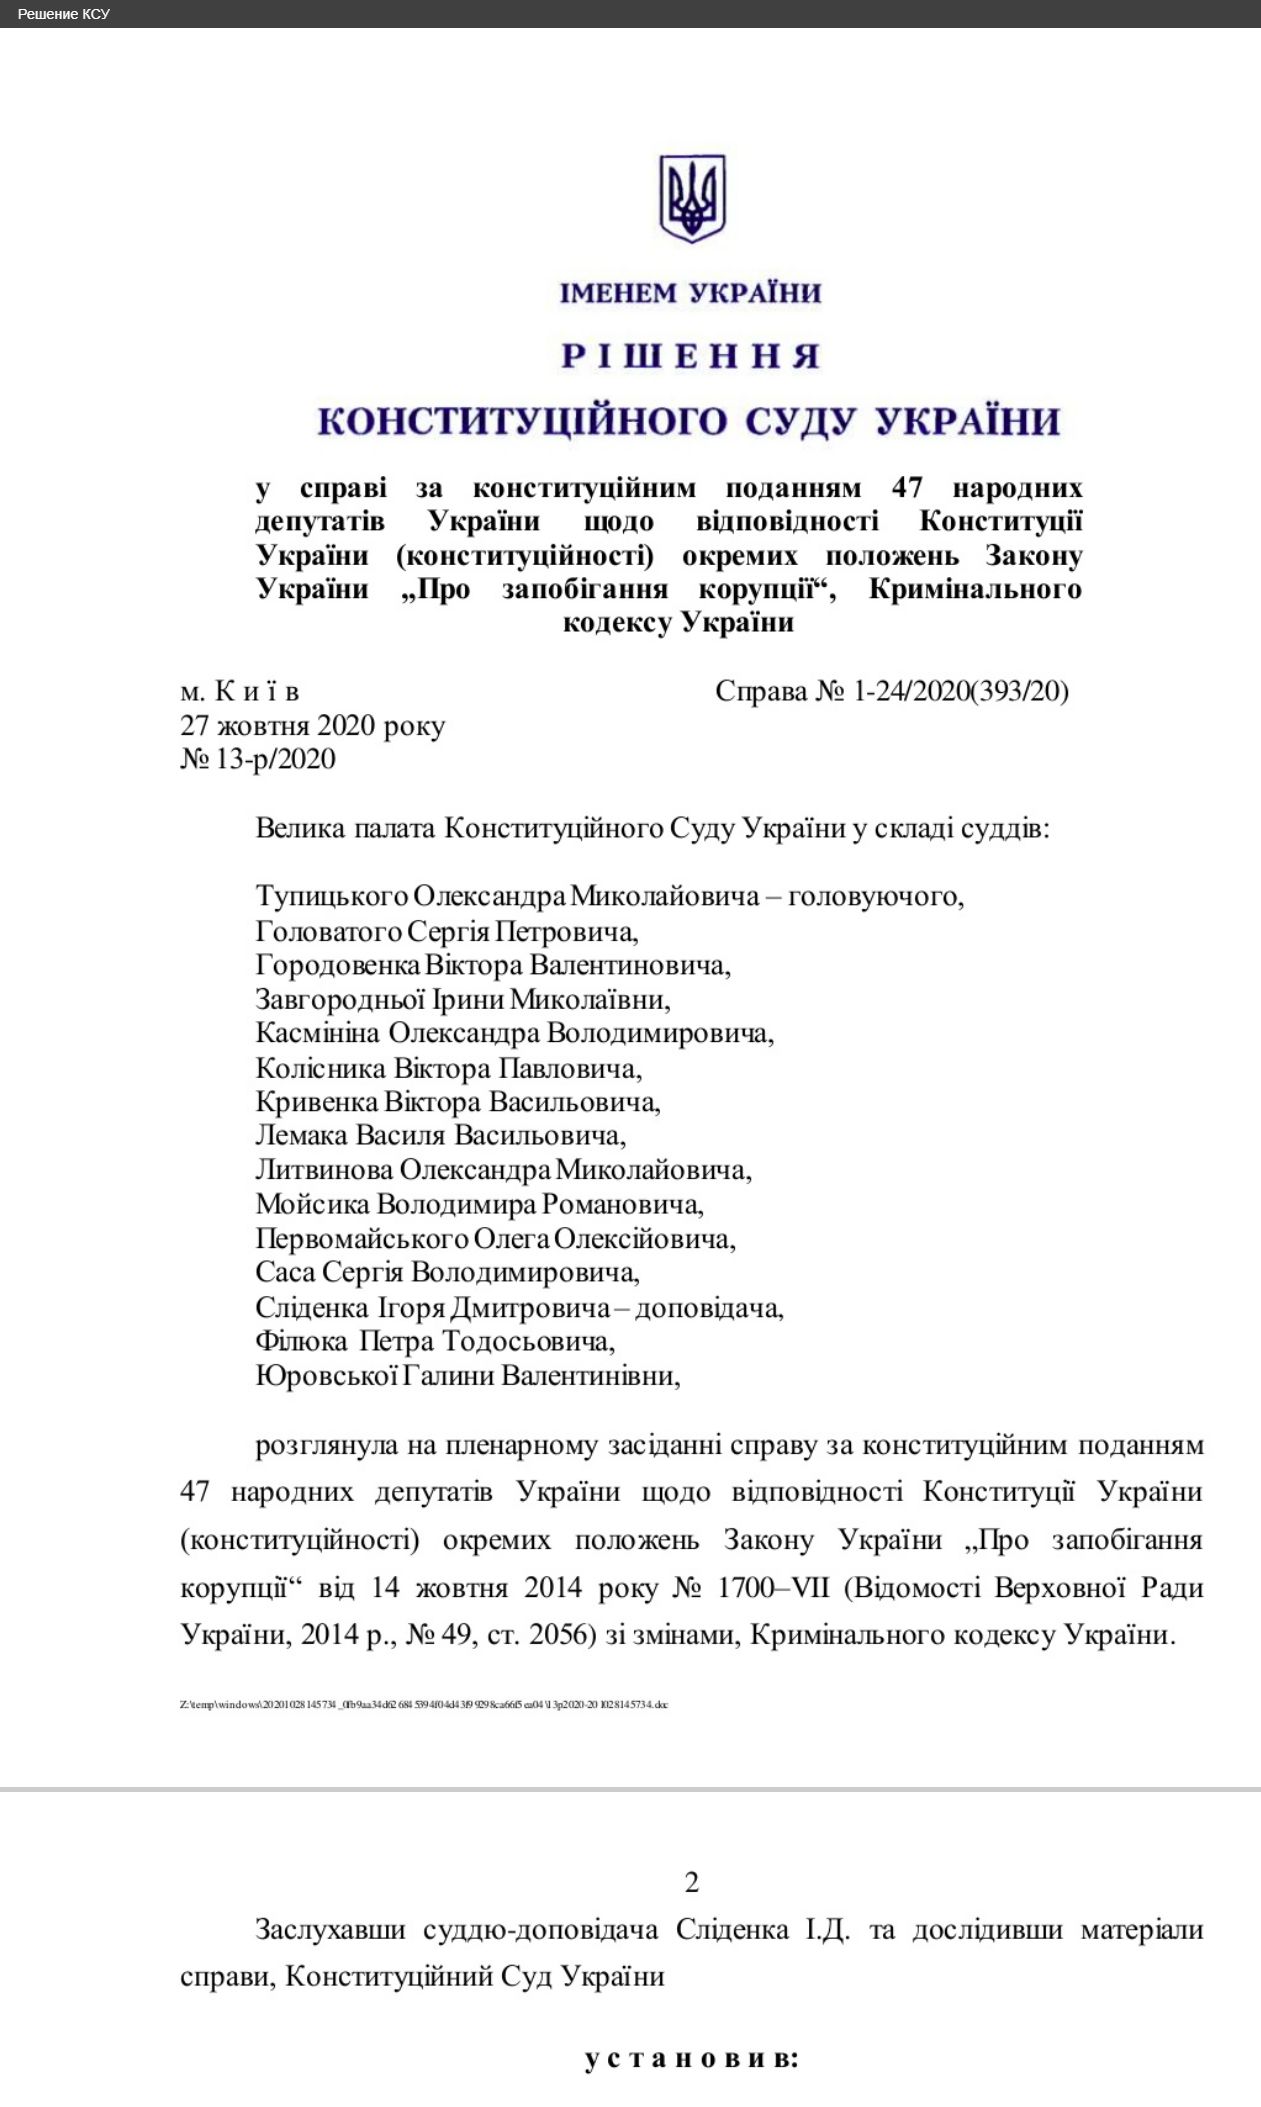 https://www.slovoidilo.ua/2020/10/28/novyna/suspilstvo/ksu-opublikuvav-rishennya-shhodo-nedostovirnoho-deklaruvannya